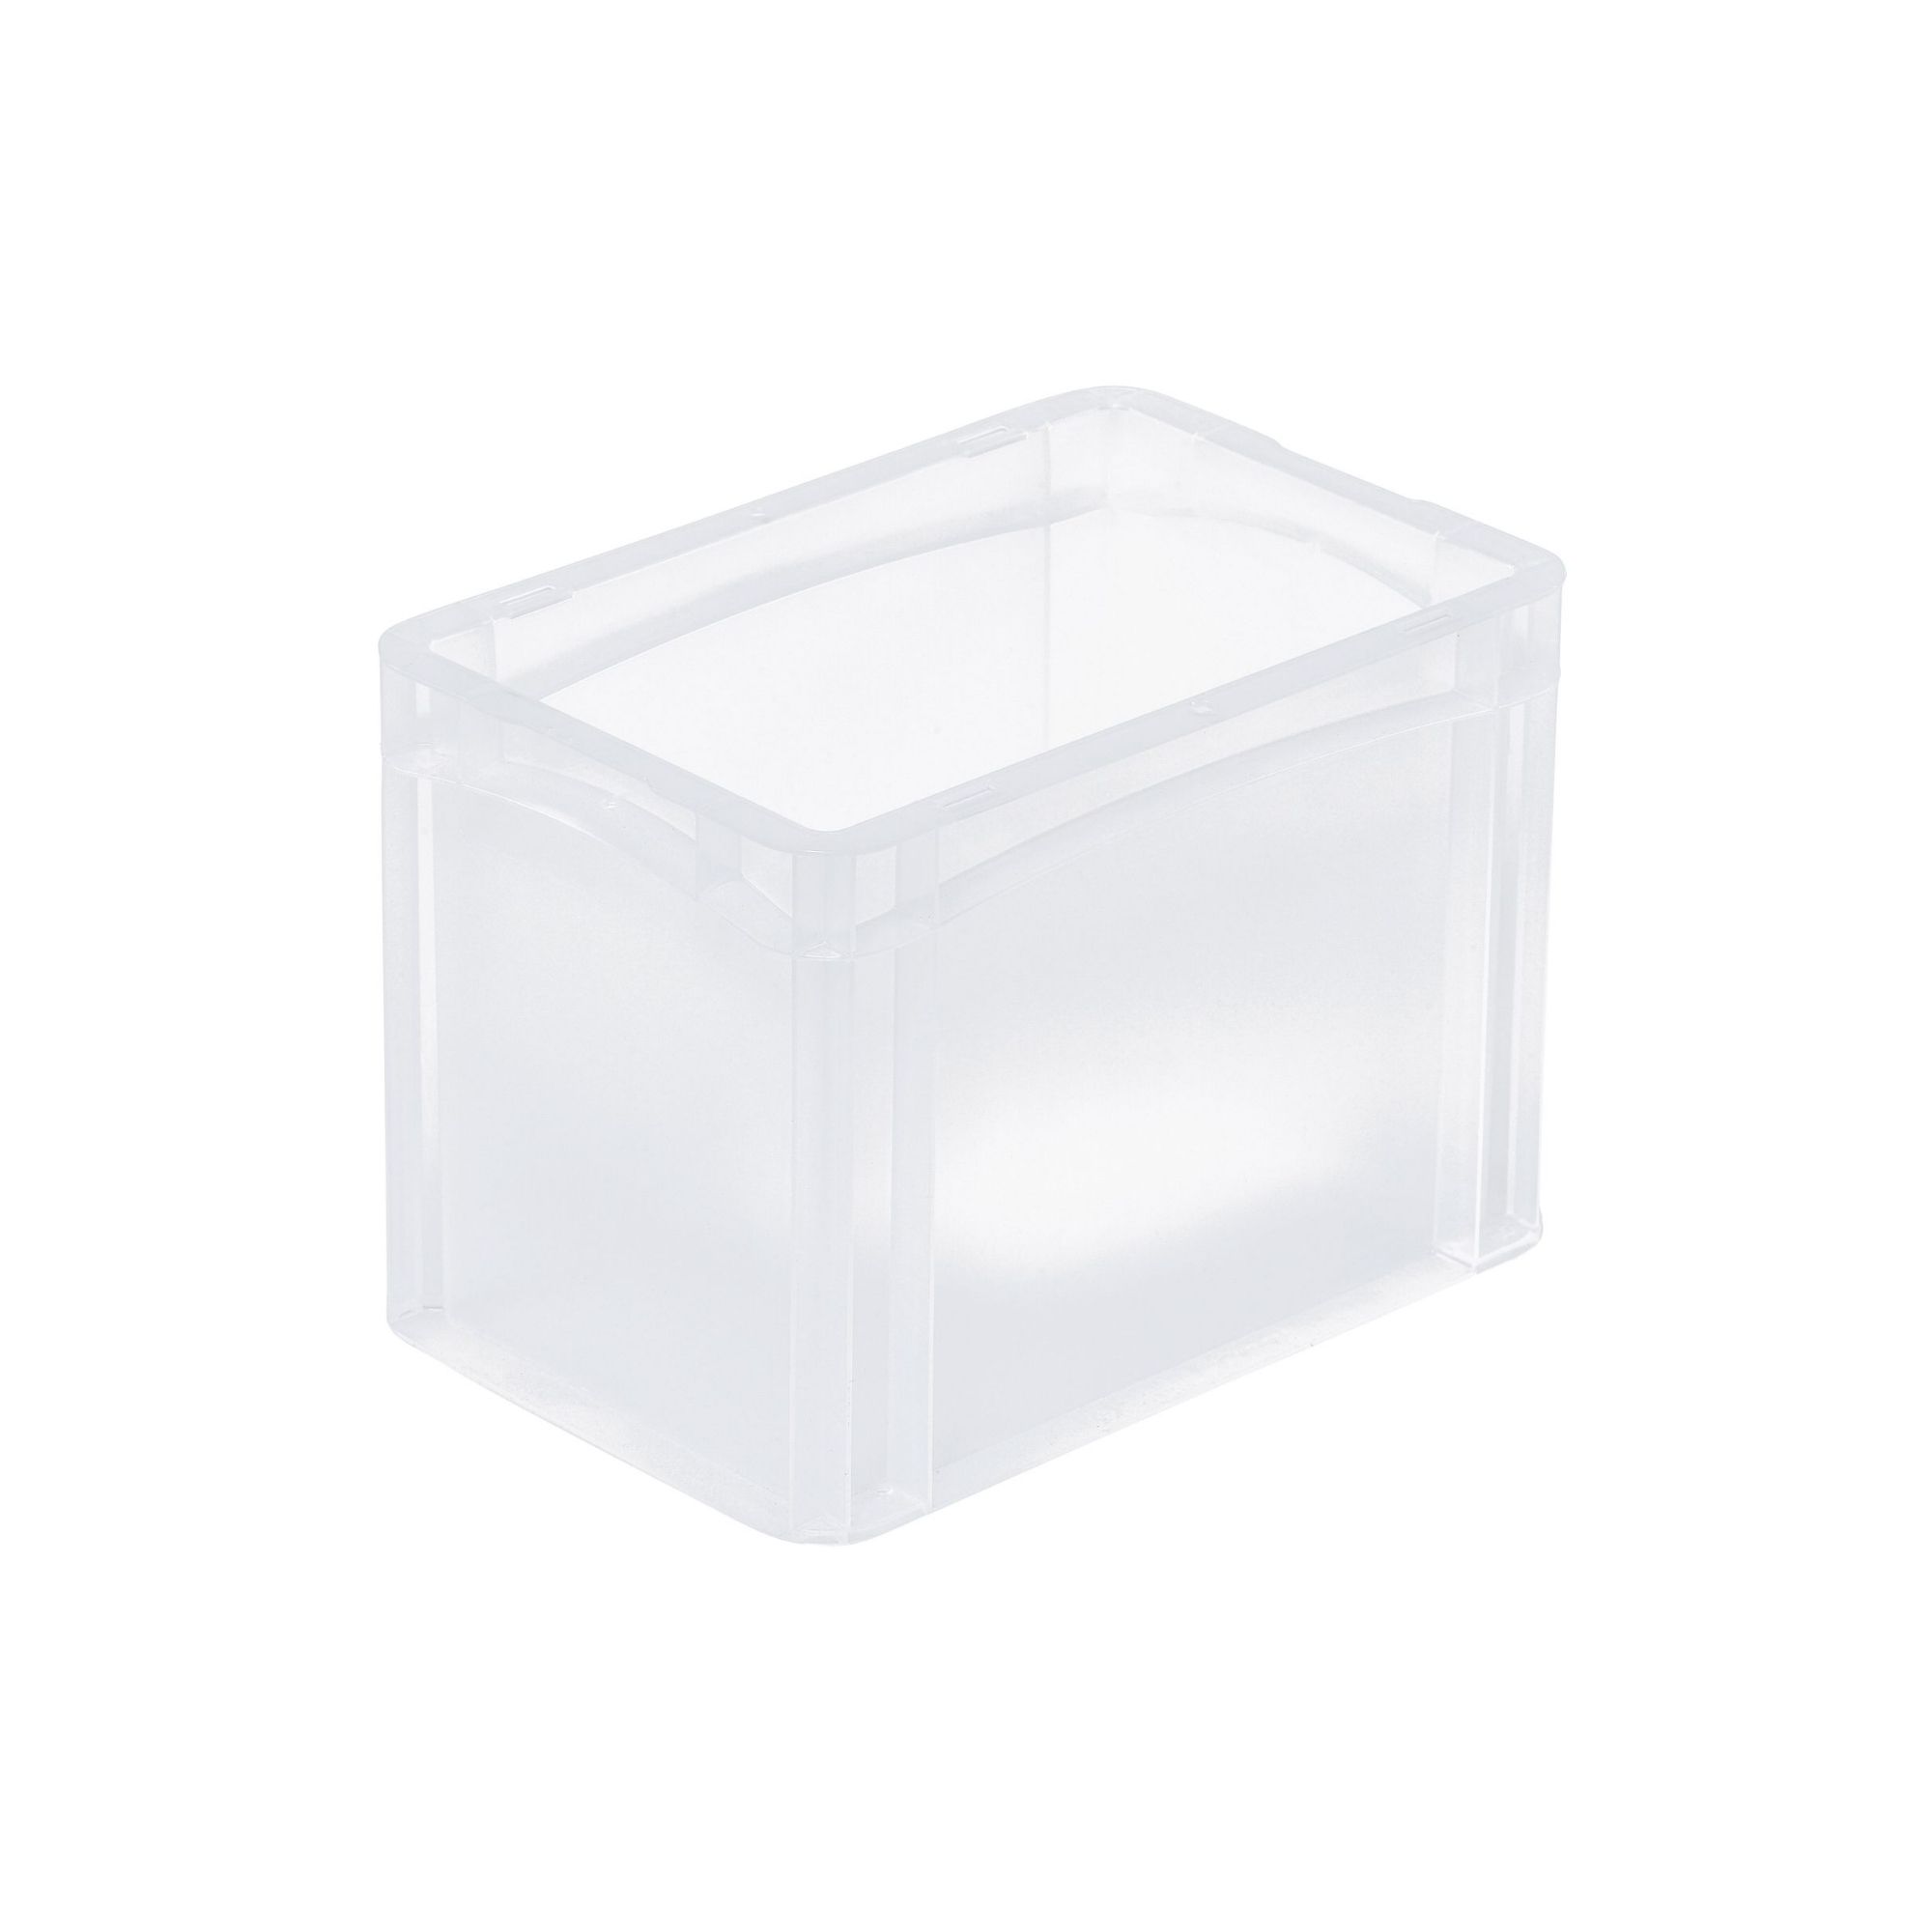 Transparenter Eurobehälter BasicLine mit geschlossenem Griff | HxBxT 22x20x30cm | 9,4 Liter | Eurobox, Transportbox, Transportbehälter, Stapelbehälter